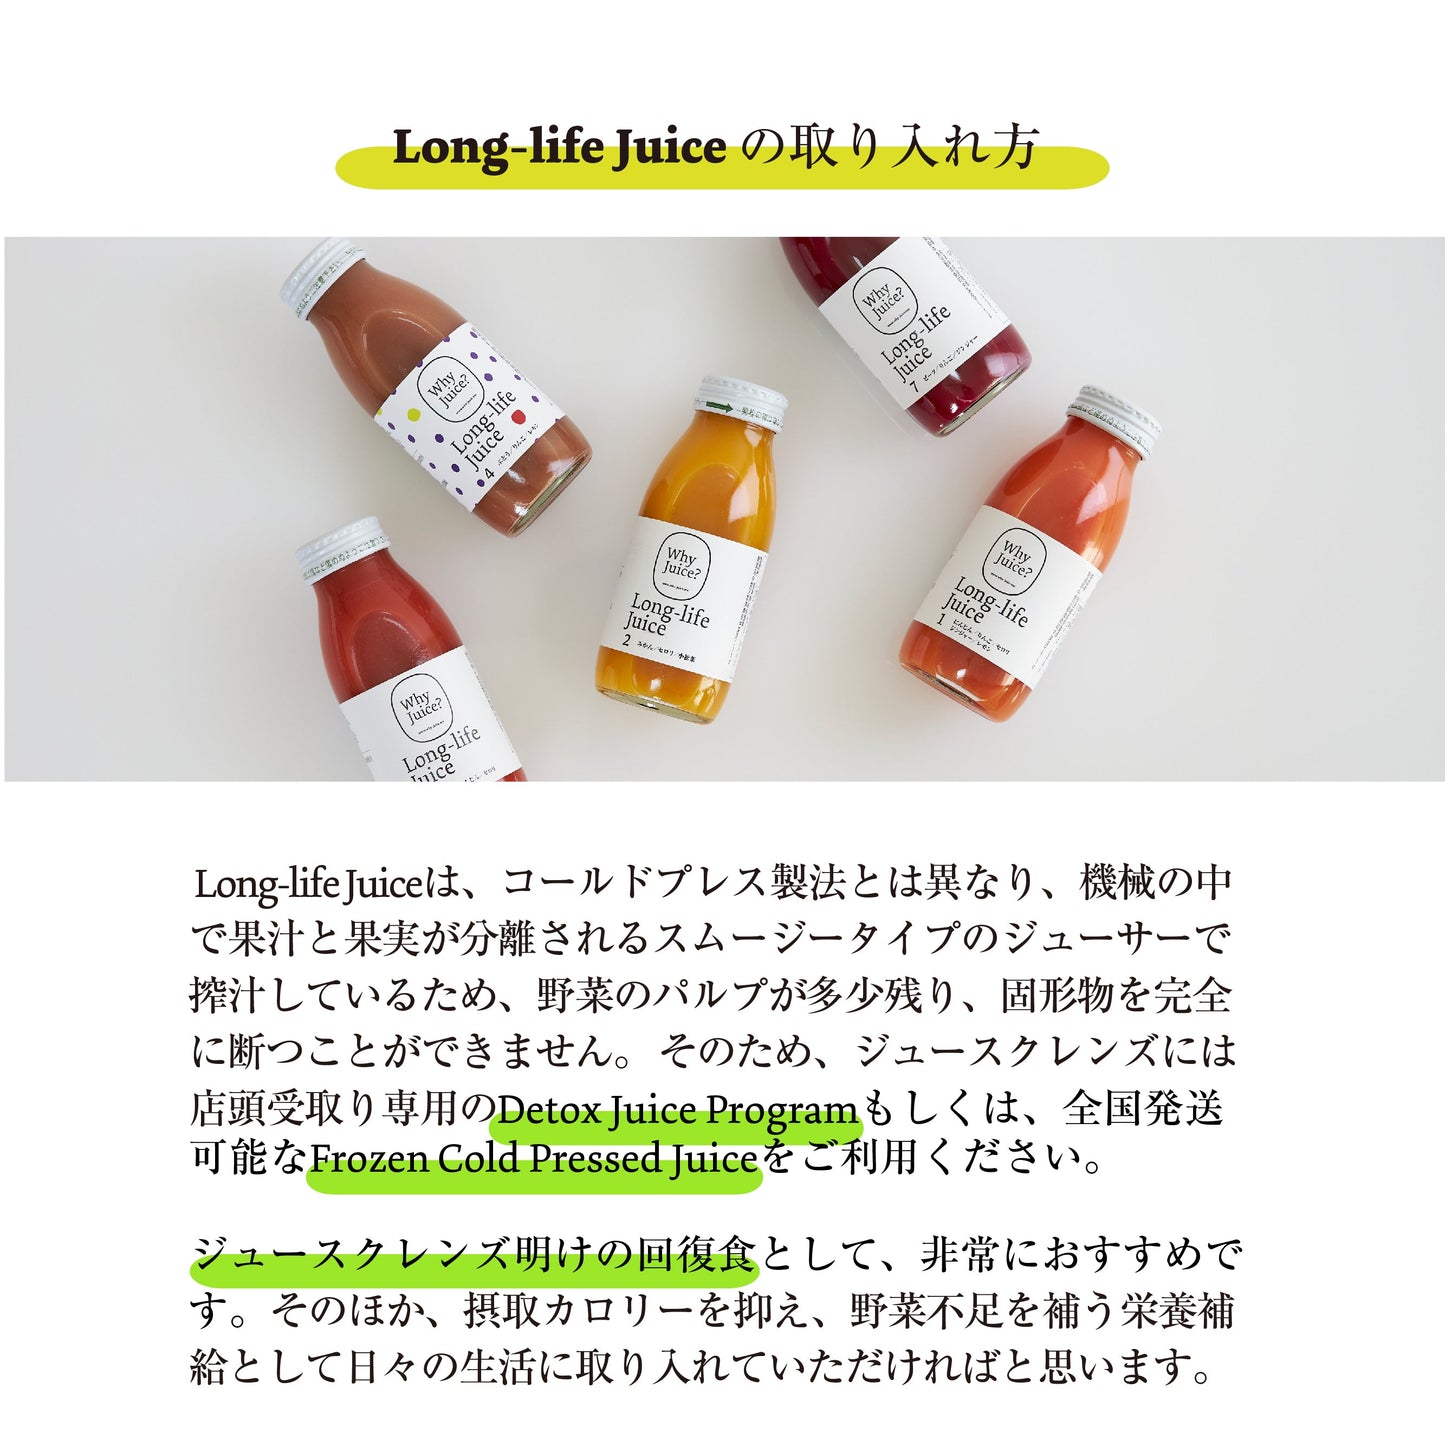 【無添加ジュース】Long-life Juice 6本ギフトボックス(定番3種類セット)